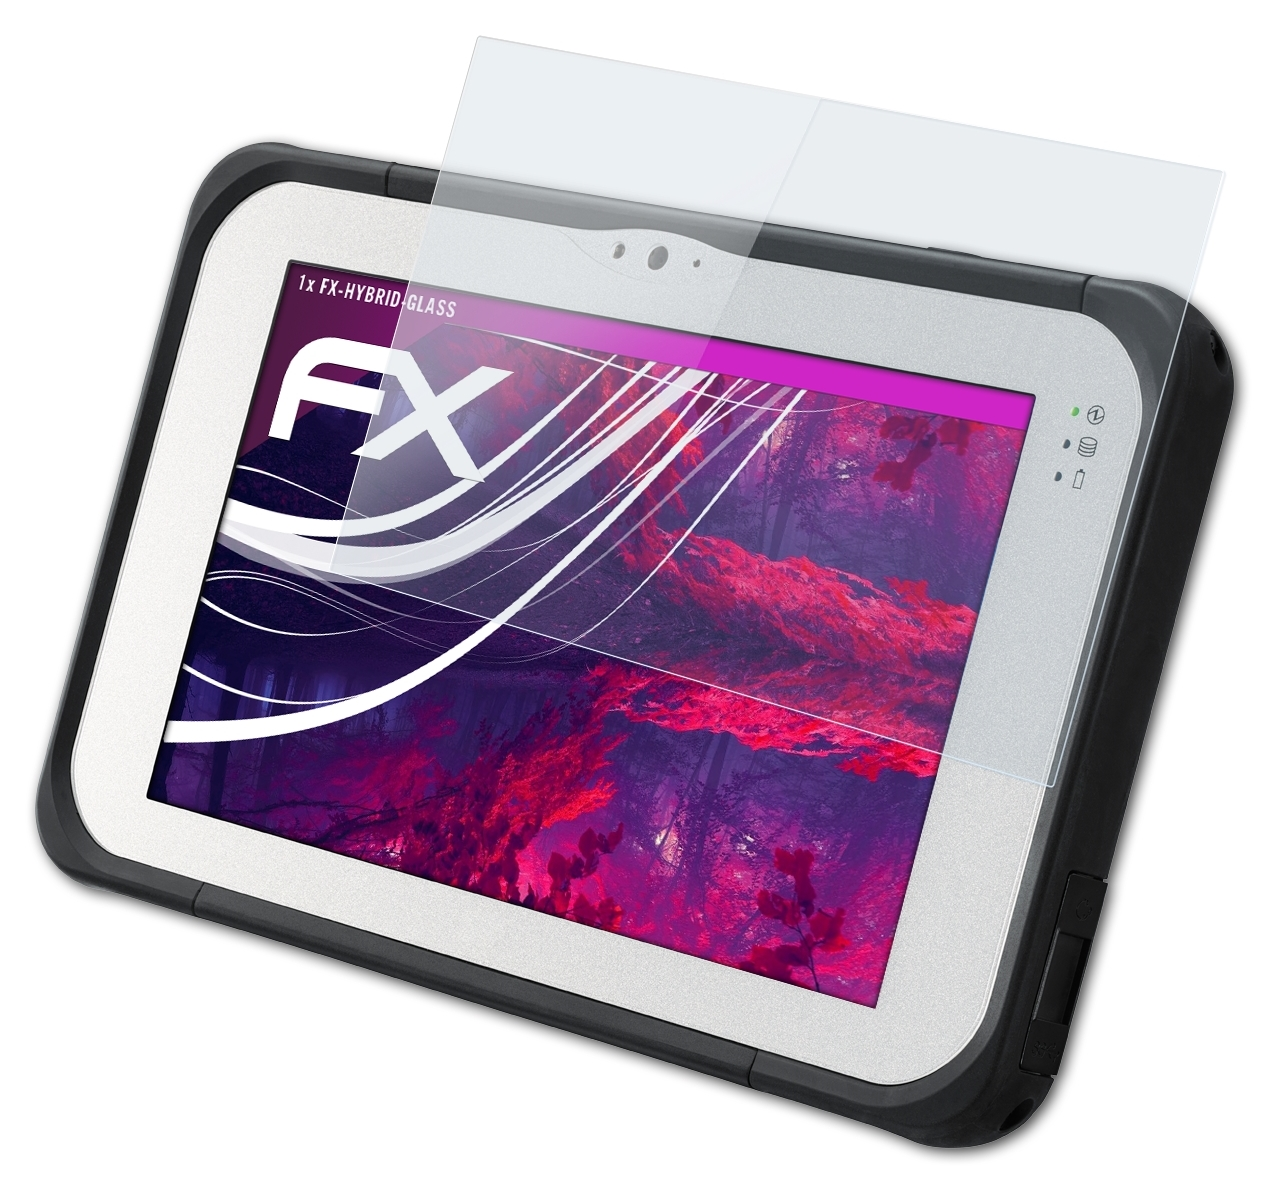 ATFOLIX FX-Hybrid-Glass Schutzglas(für Panasonic ToughPad FZ-M1 FZ-B2) 